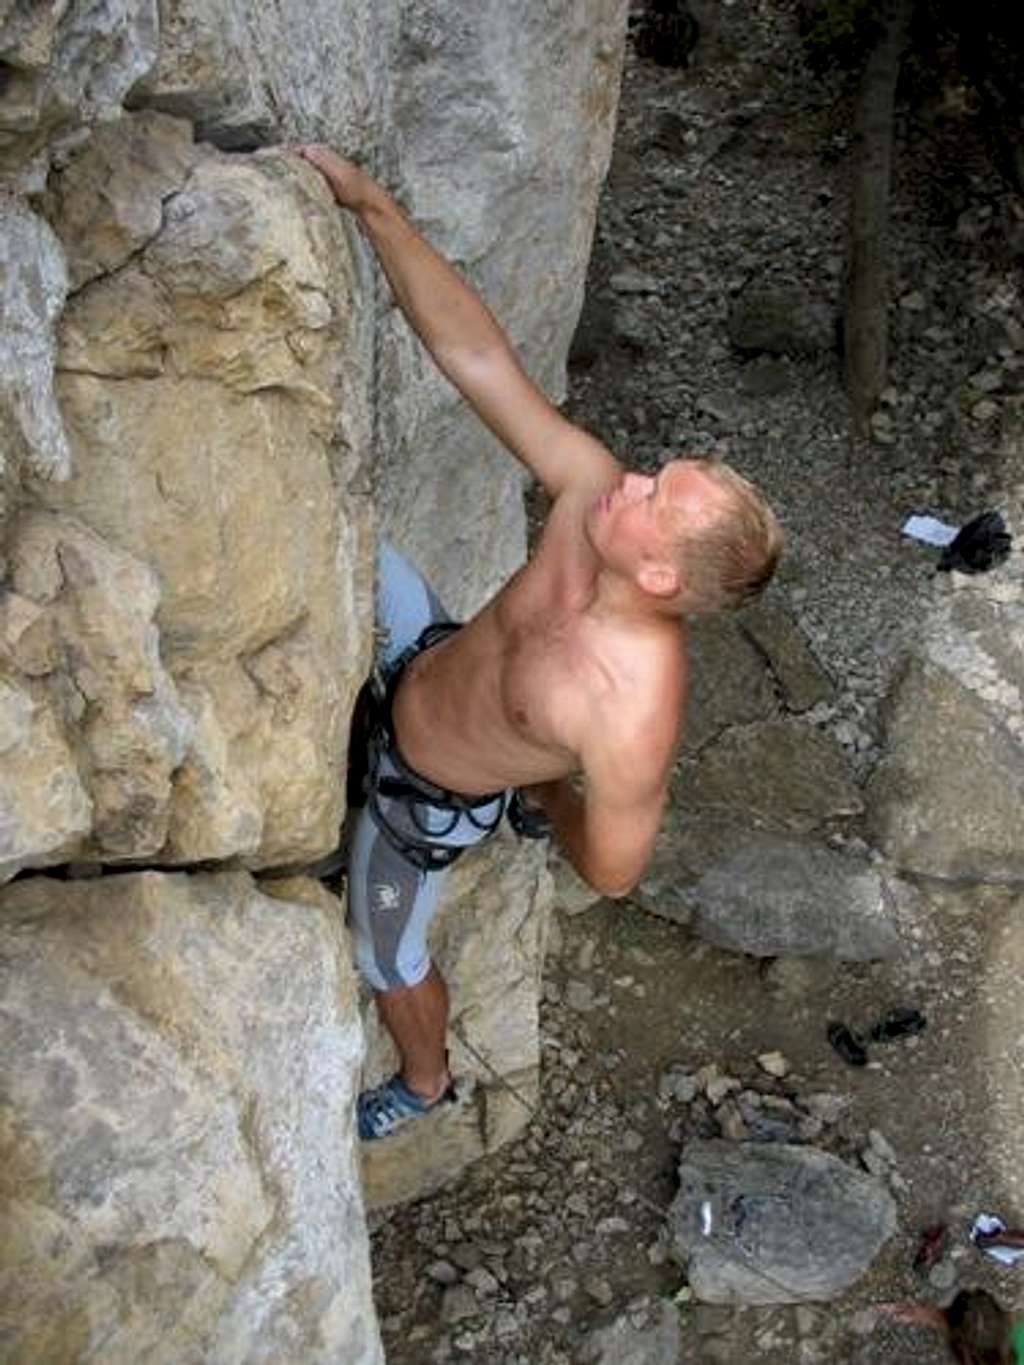 Crimea, Ukraine sport climbing